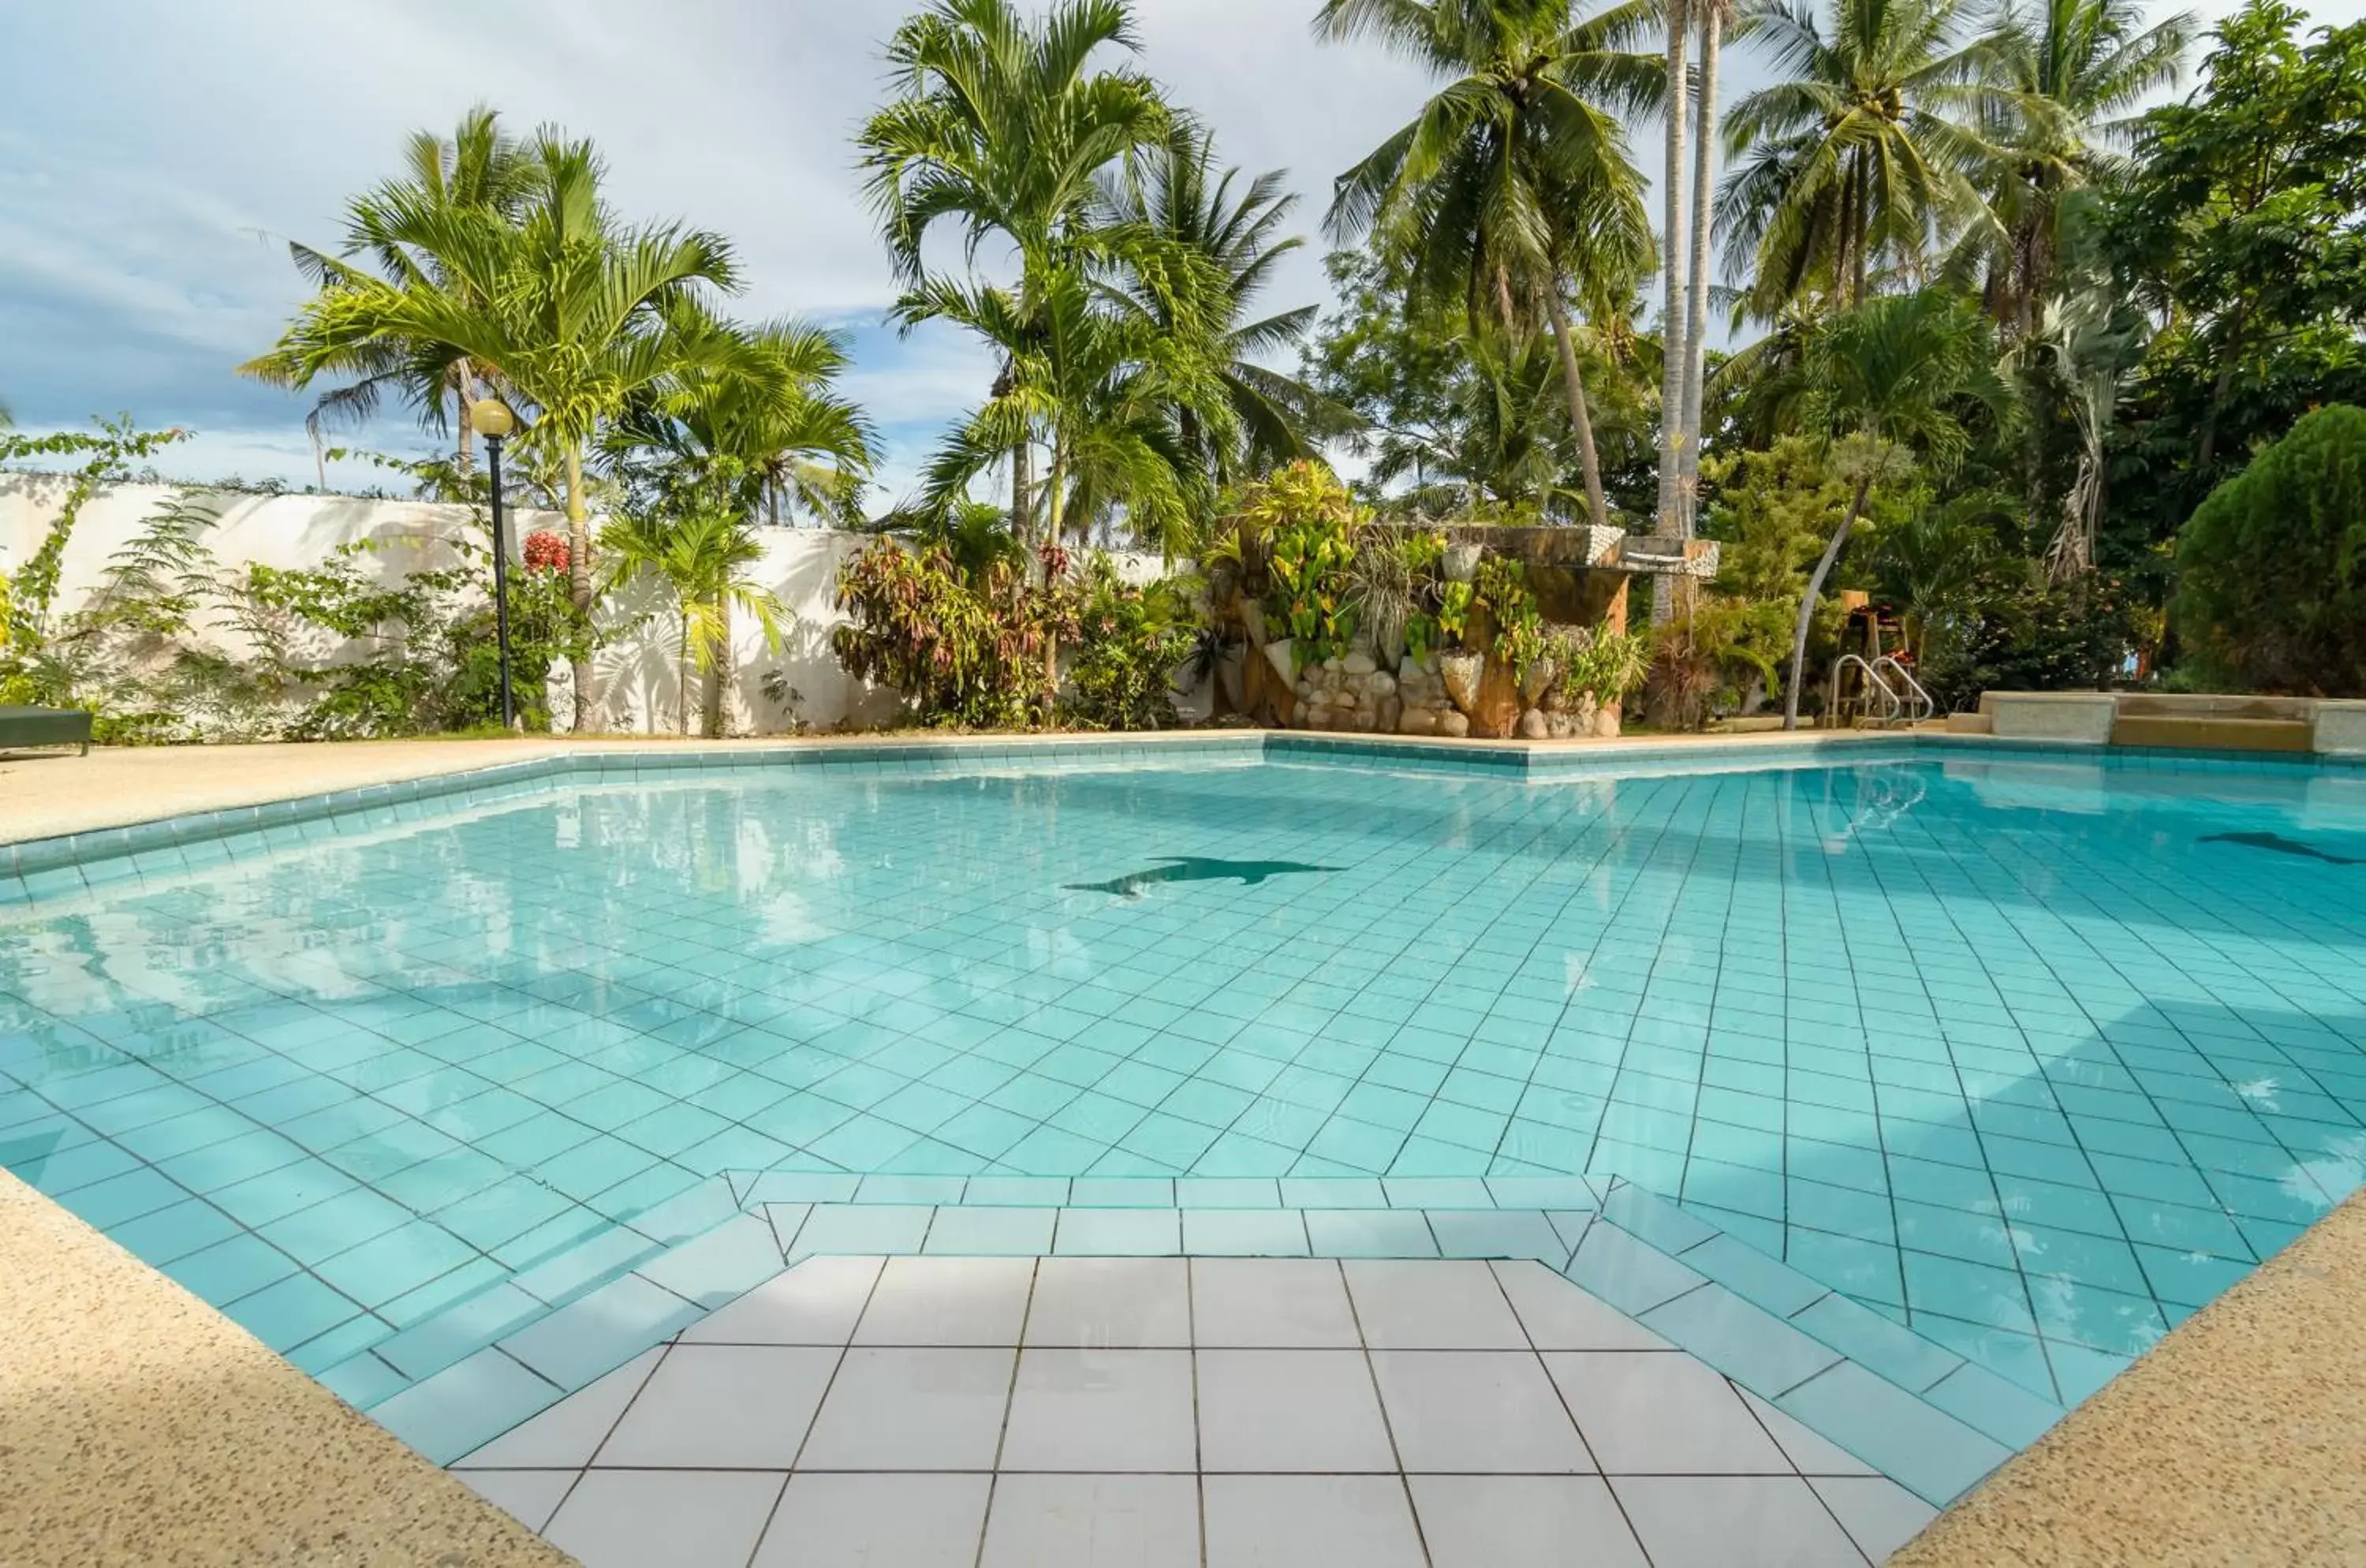 Swimming pool in Bohol Sea Resort